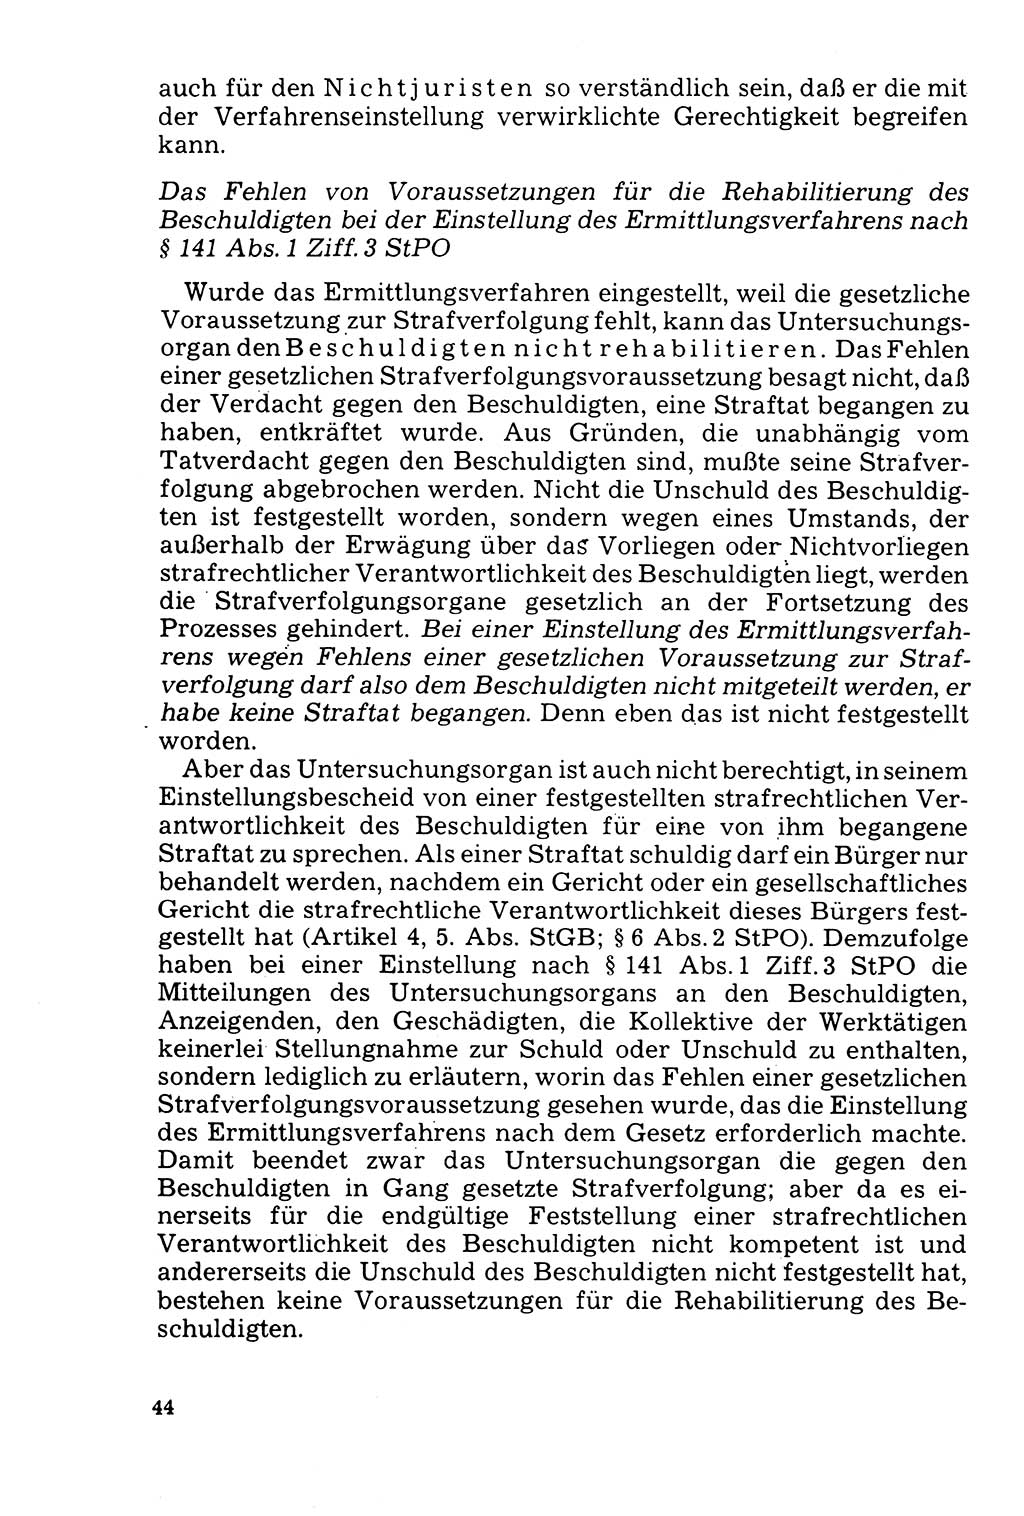 Der Abschluß des Ermittlungsverfahrens [Deutsche Demokratische Republik (DDR)] 1978, Seite 44 (Abschl. EV DDR 1978, S. 44)